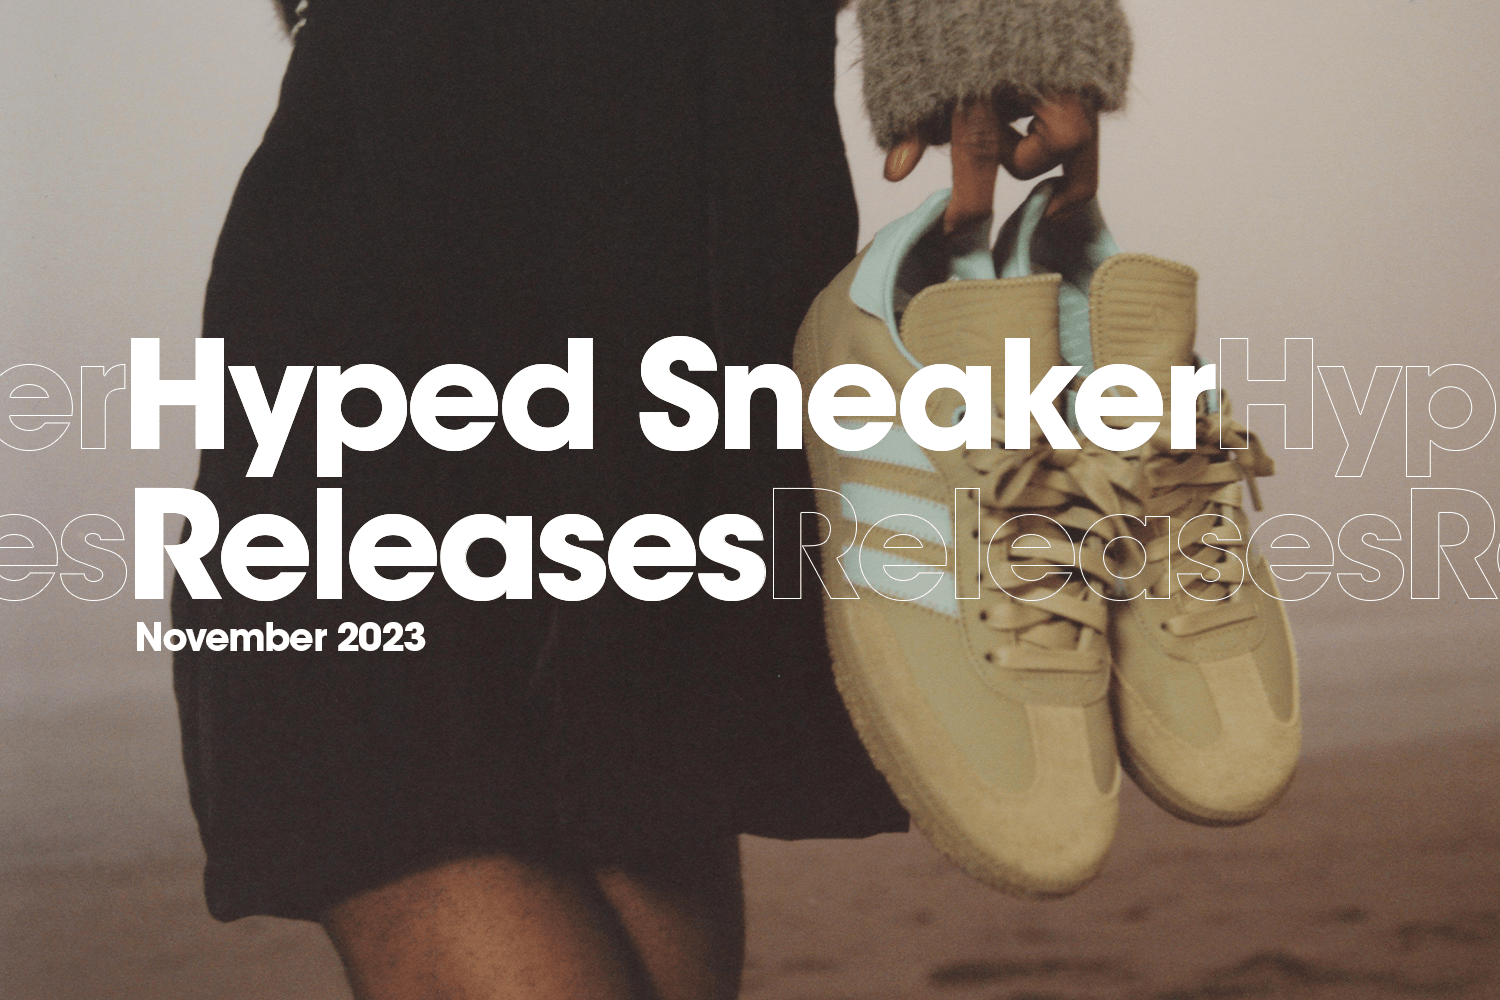 Die hyped Sneaker Releases von November 2023